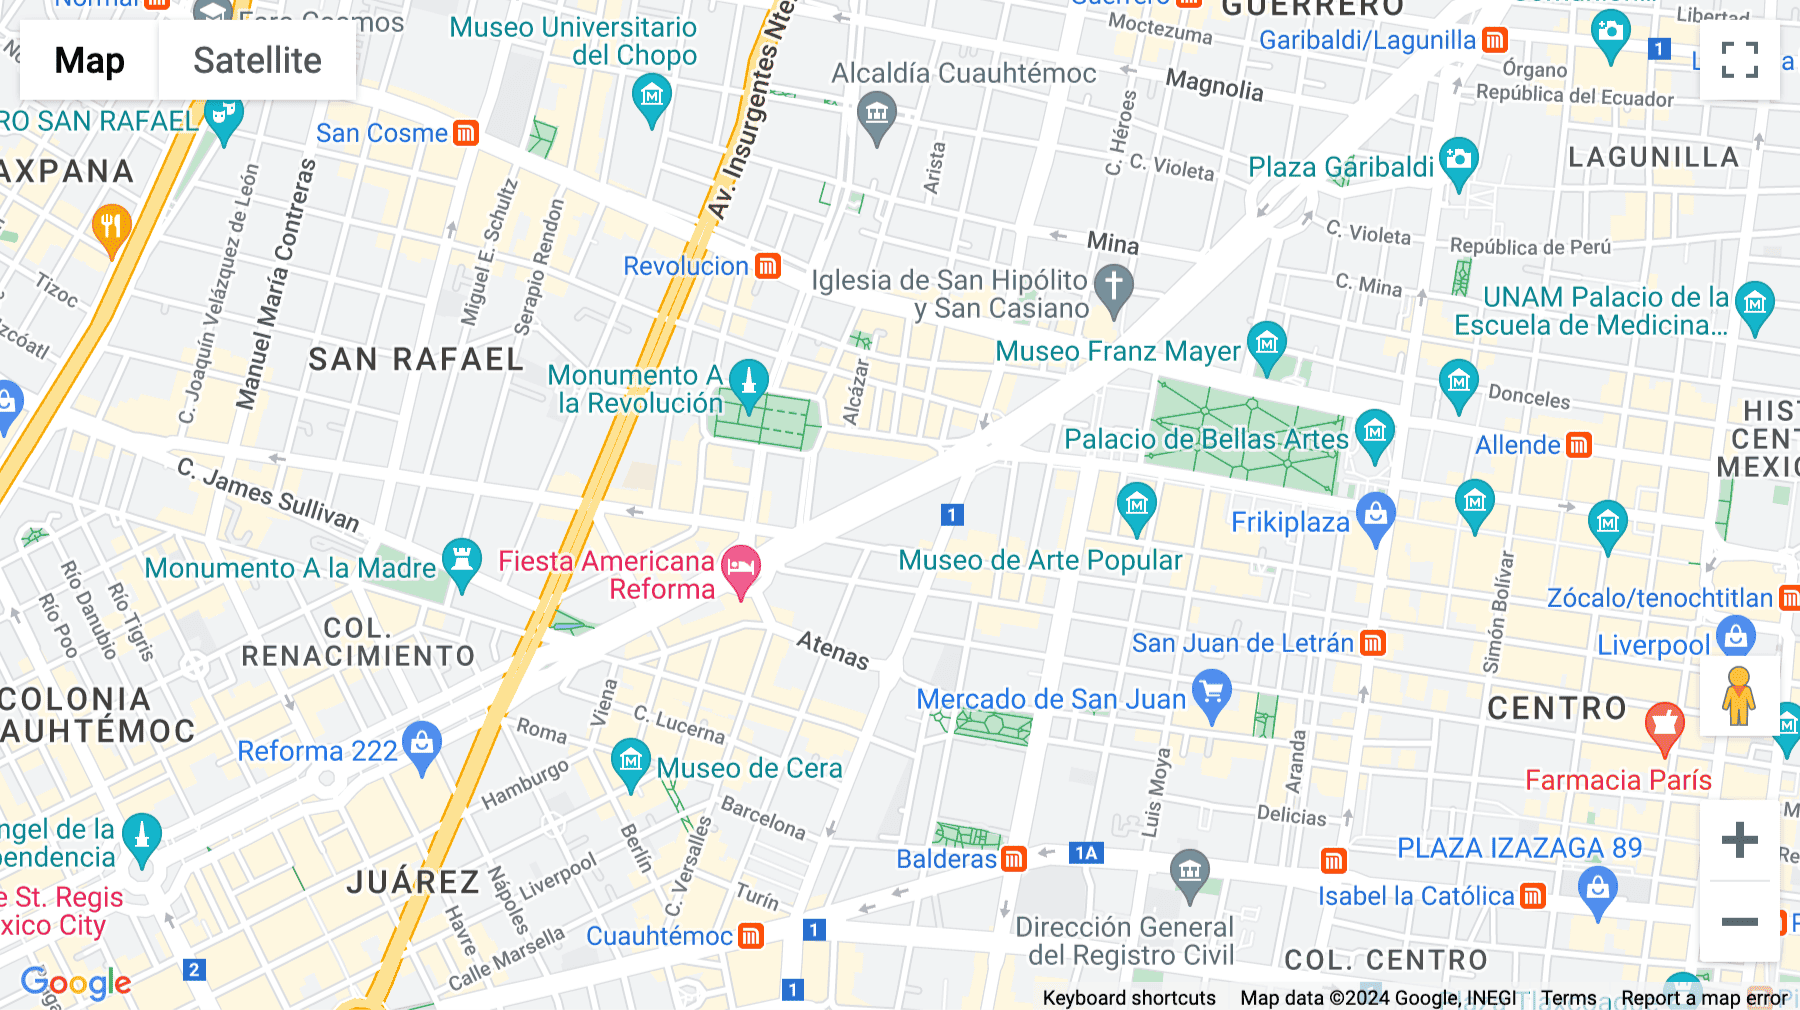 Click for interative map of Reforma 26, Paseo de la Reforma 26 Colonia Juárez, Mexico City